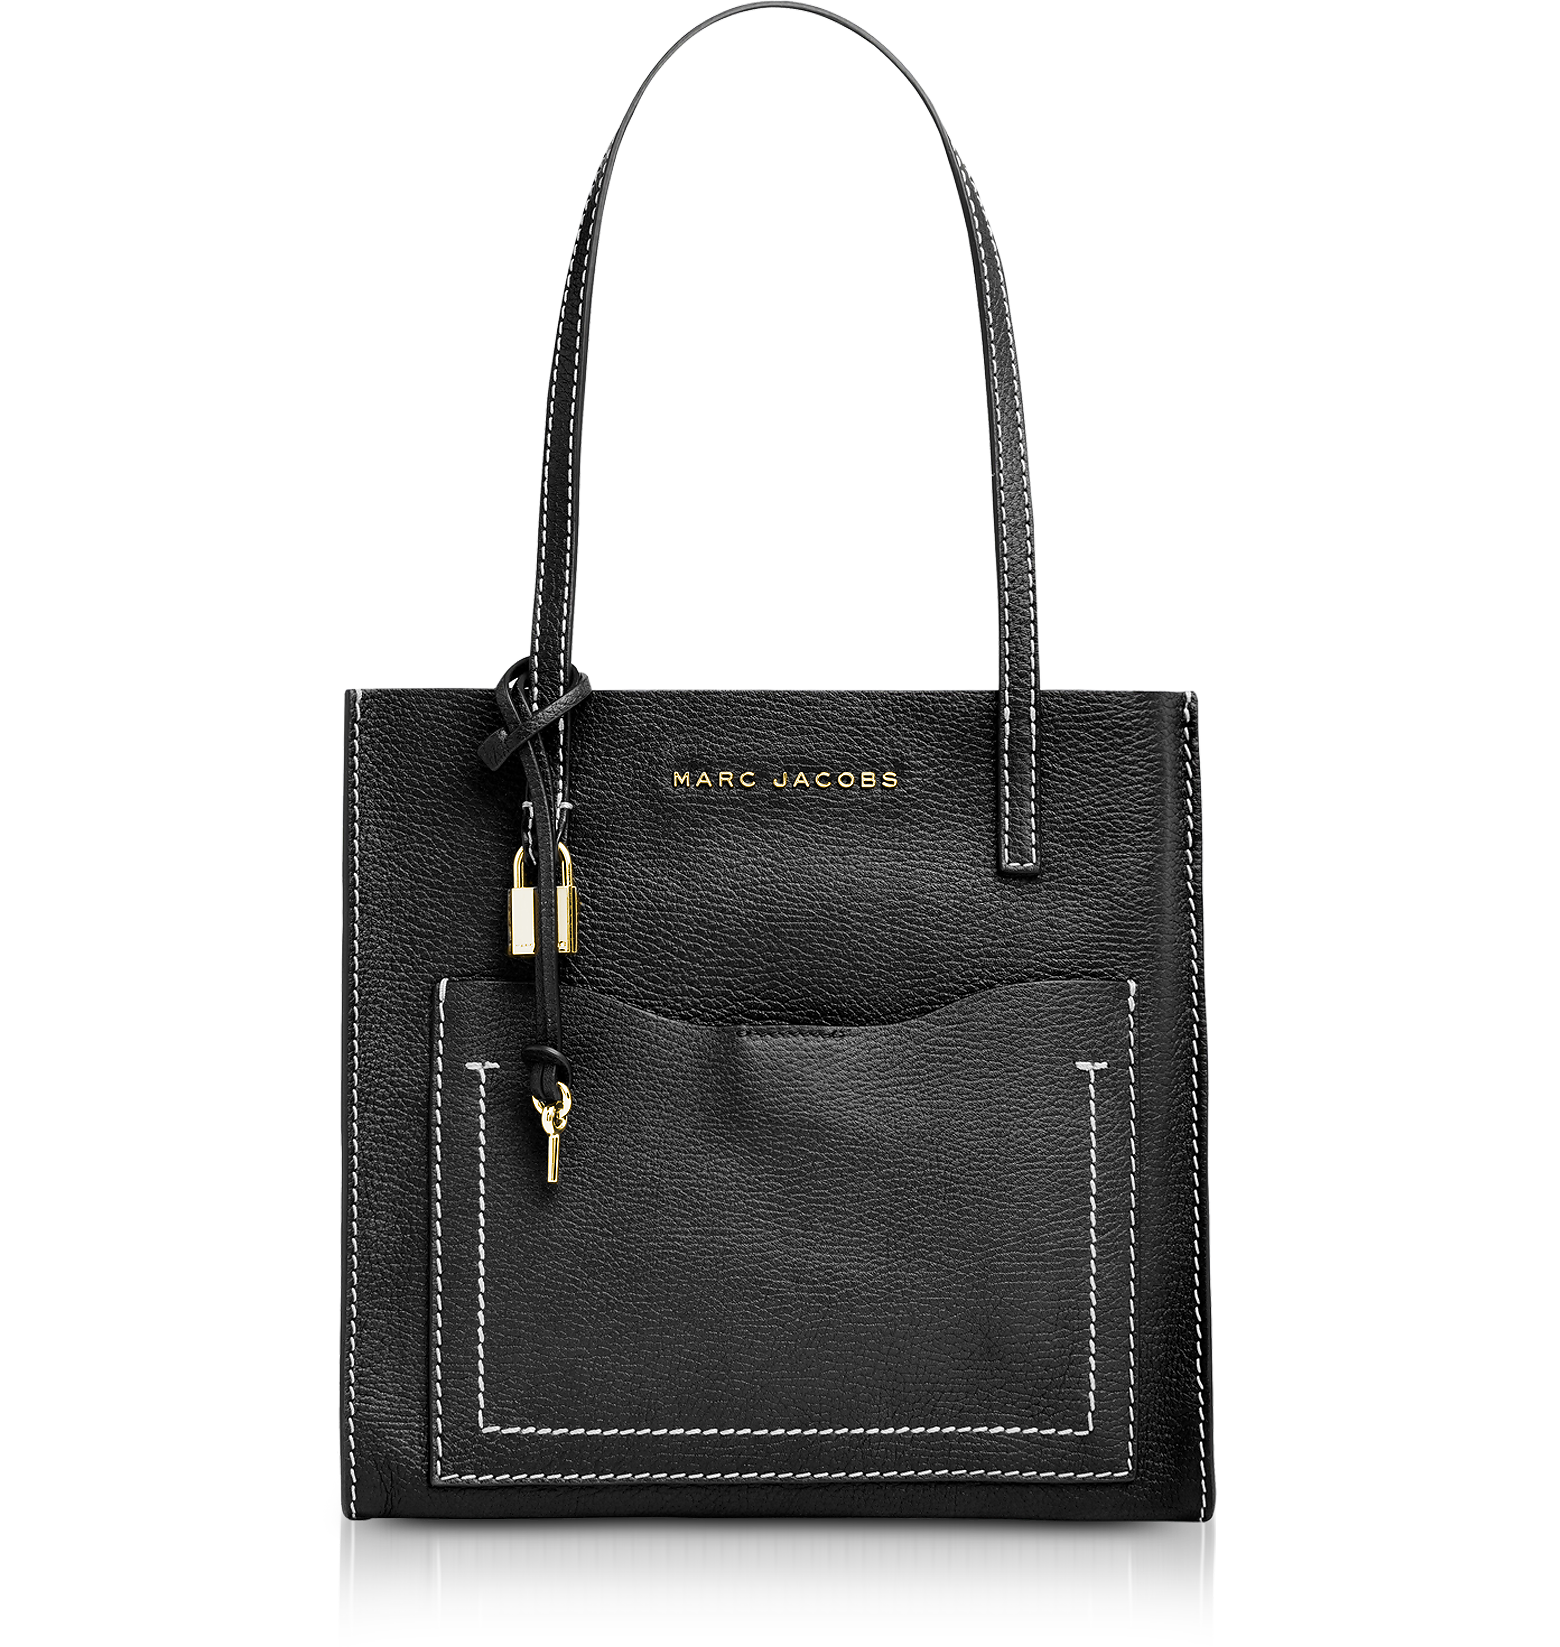 Marc Jacobs T-Pocket Grind Tote Bag Review – Best Black Tote Bag